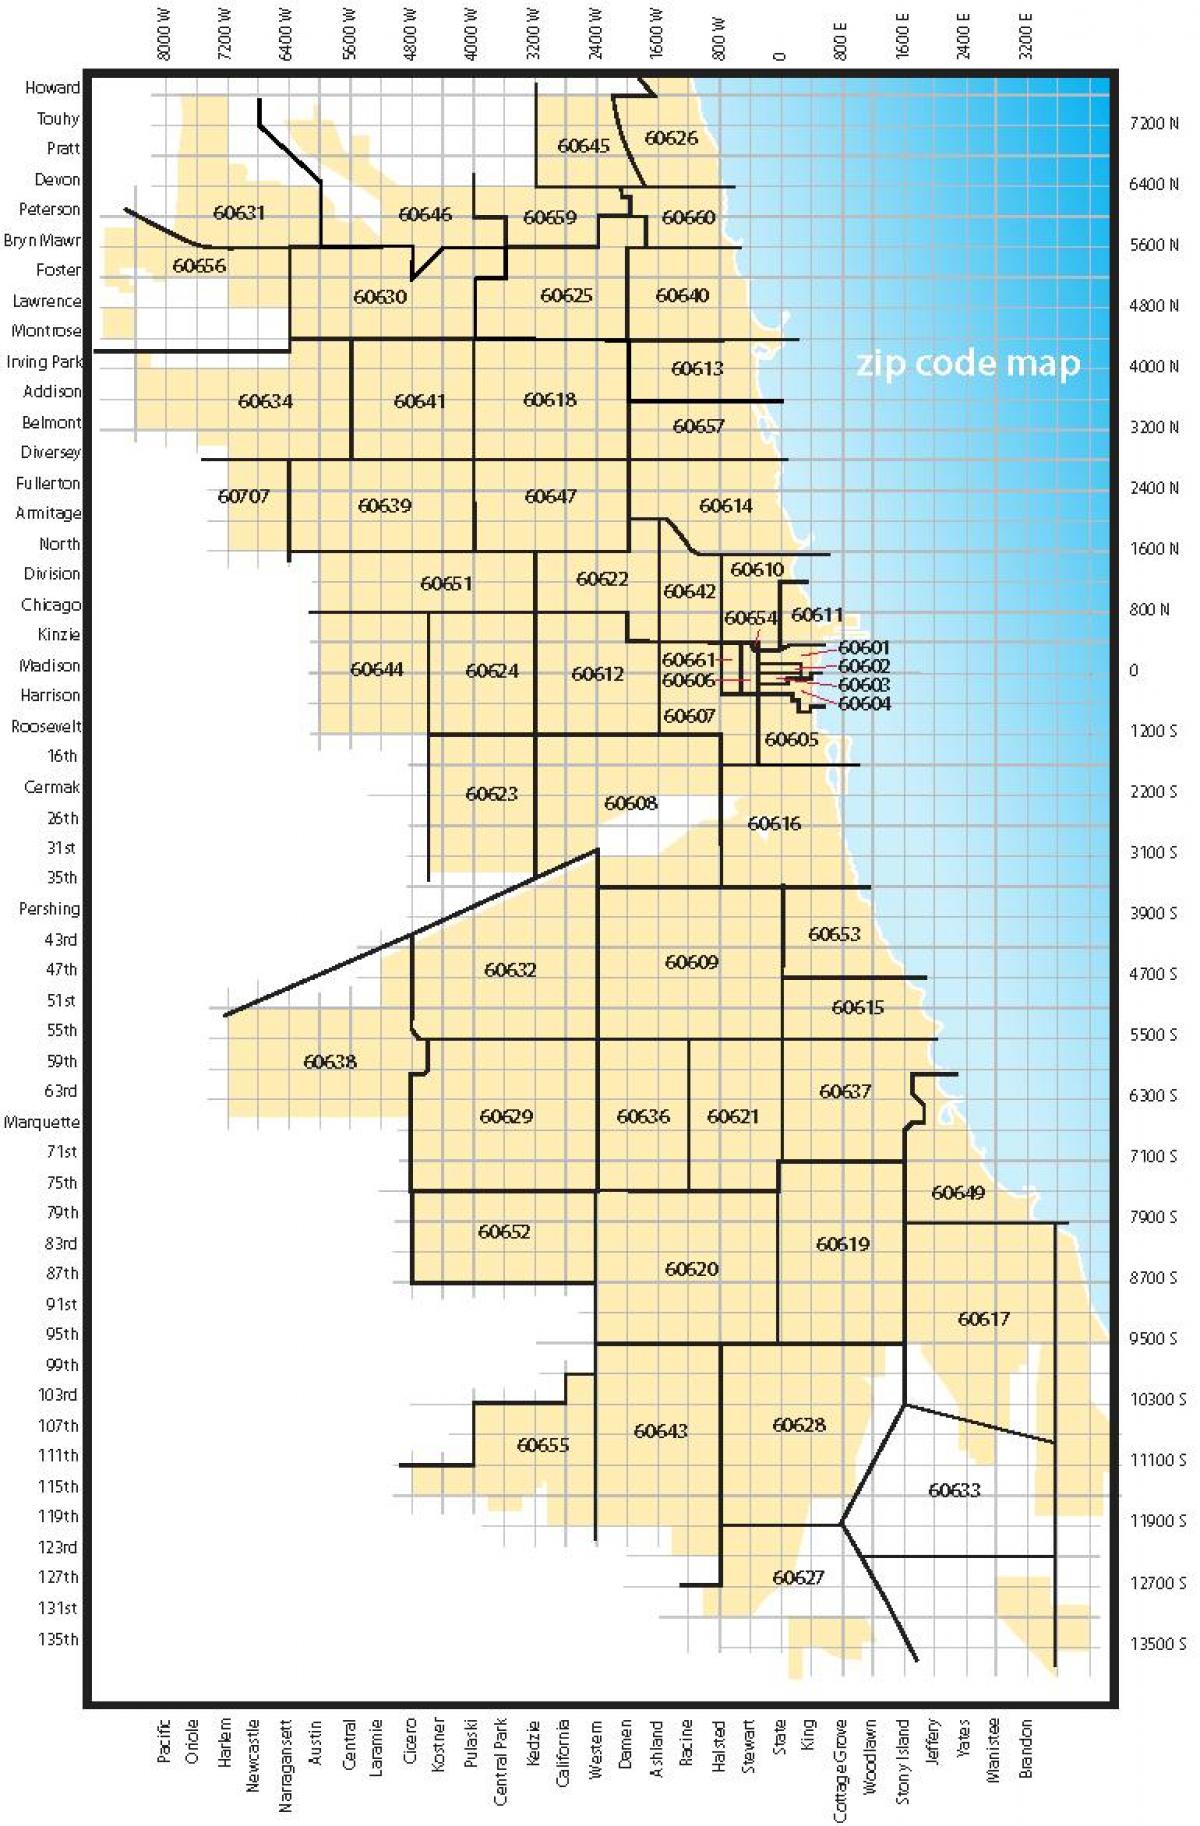 Chicago-området koden kart